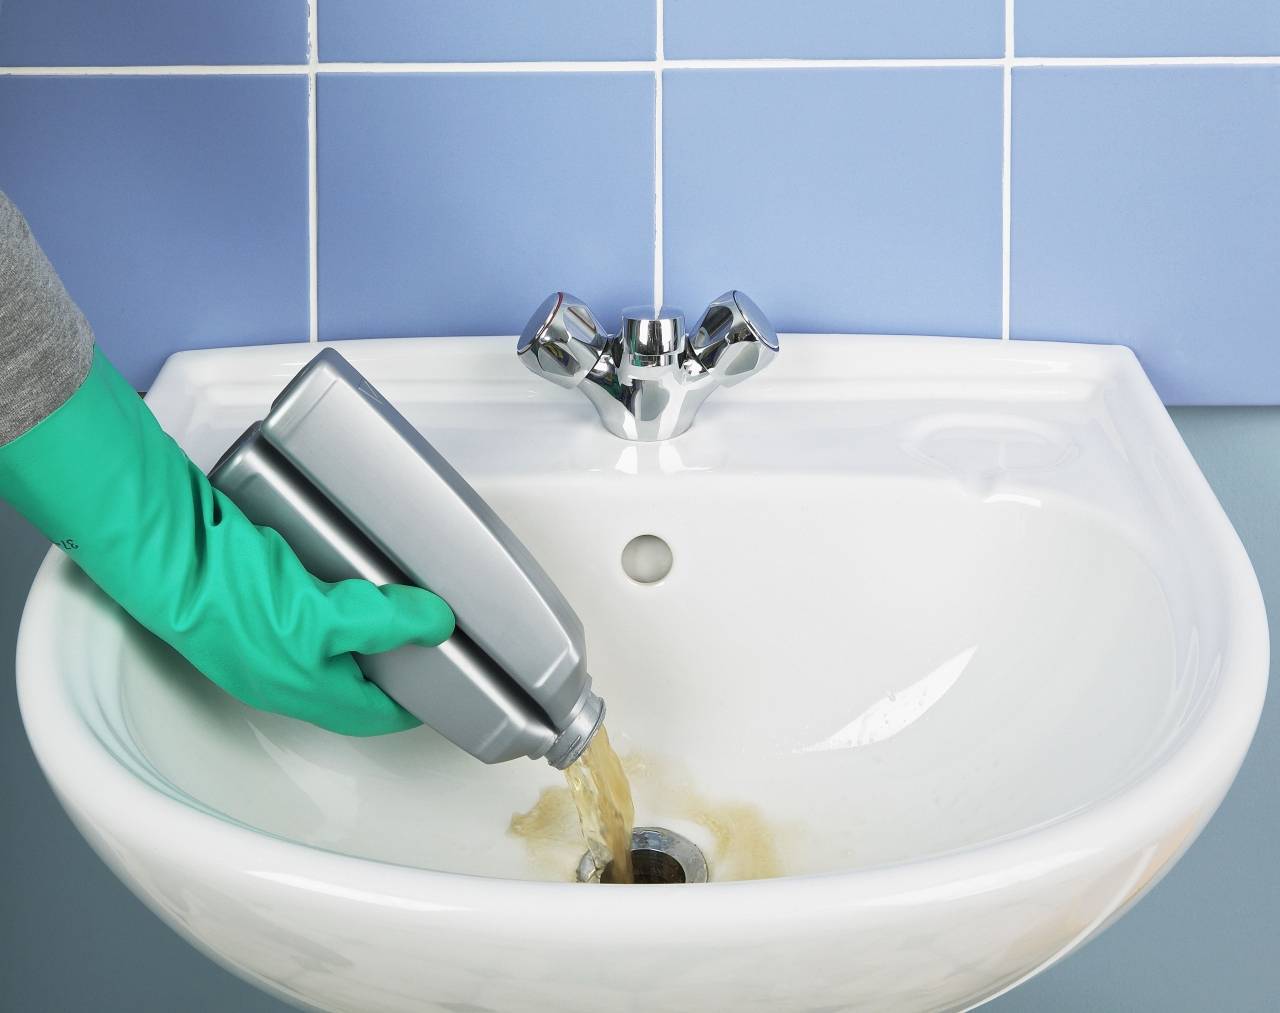 Засор в ванной: как прочистить трубу в домашних условиях если не уходит вода, чем пробить, лучшее средство | greendom74.ru